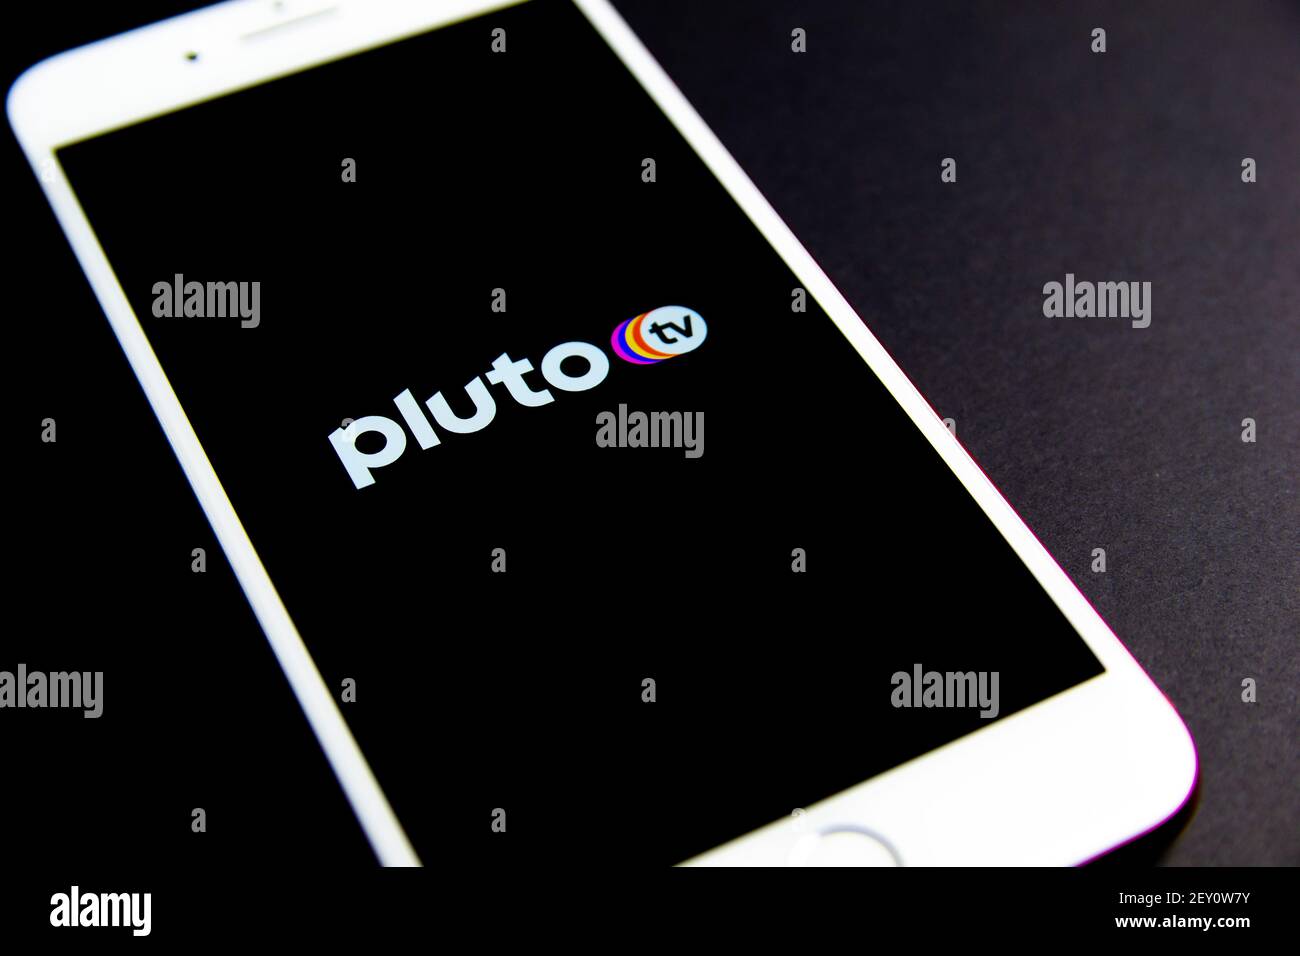 Spanien. 03, 05, 2021. Pluto TV App-Symbol in einem iPhone. Pluto TV ist ein kostenloser Live-Stream-TV und On-Demand-Video-Service von ViacomCBS. Stockfoto